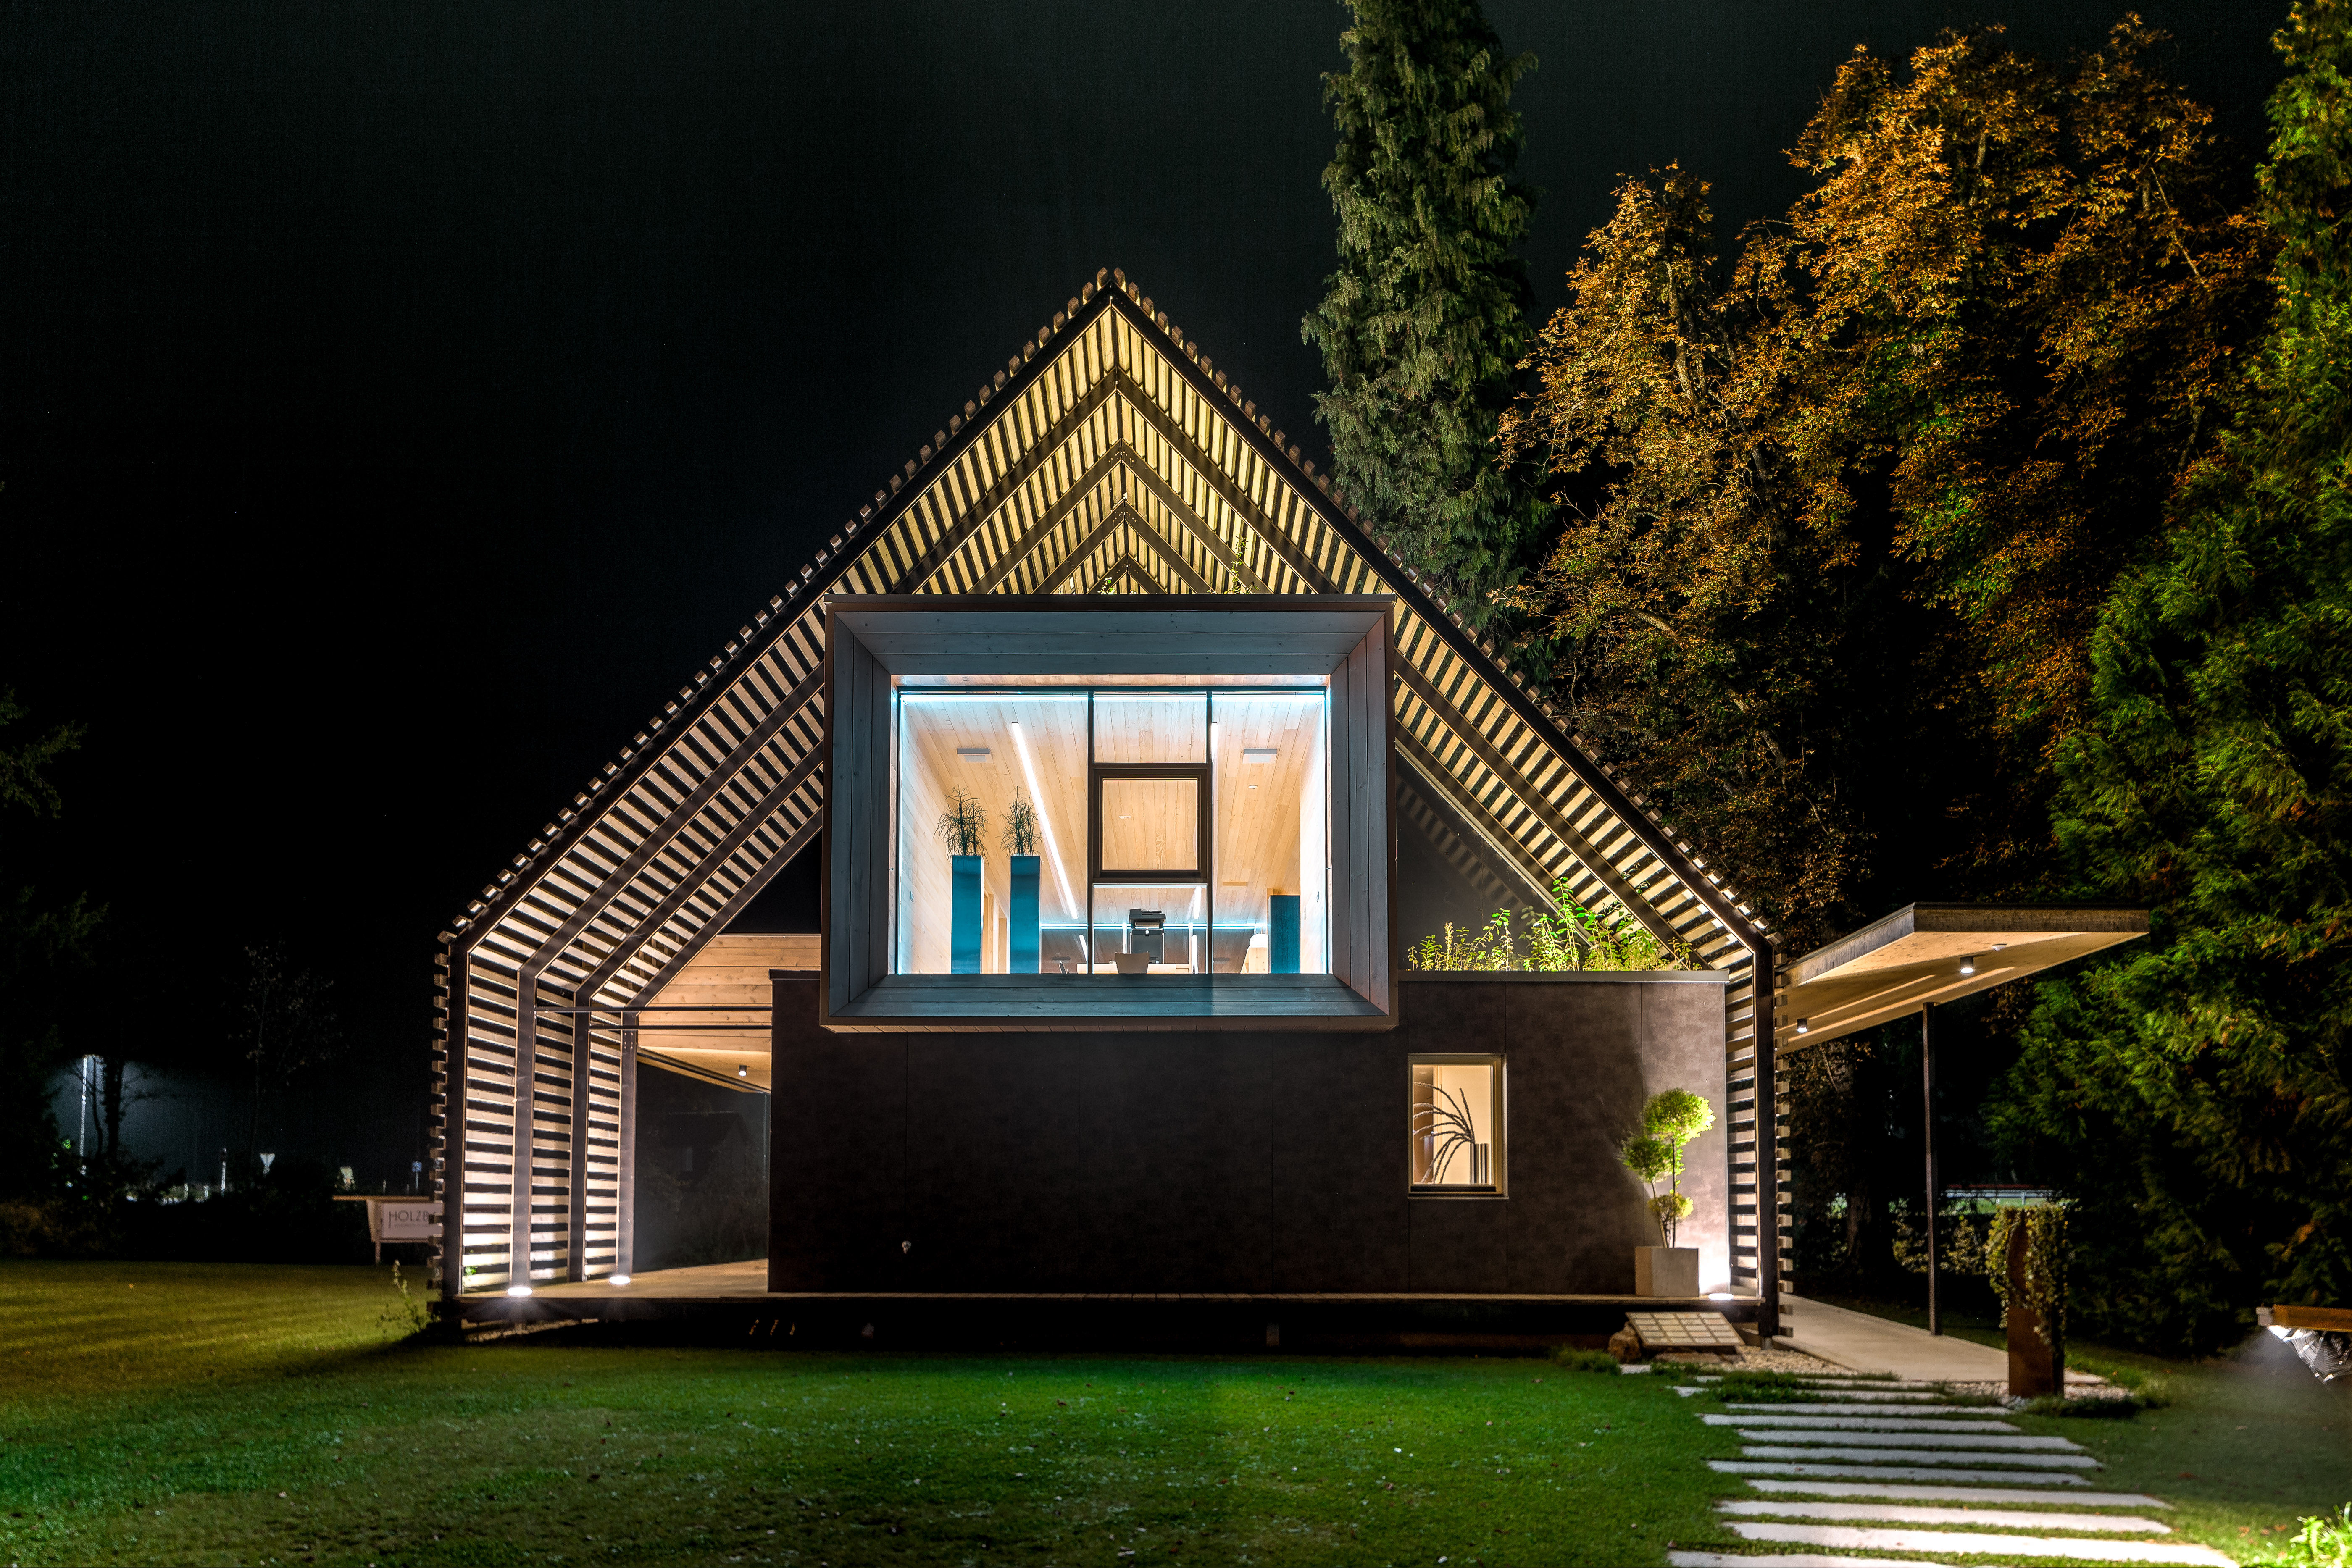 Chytré domy spojují kvalitu a luxus pod českou značkou Smarteon